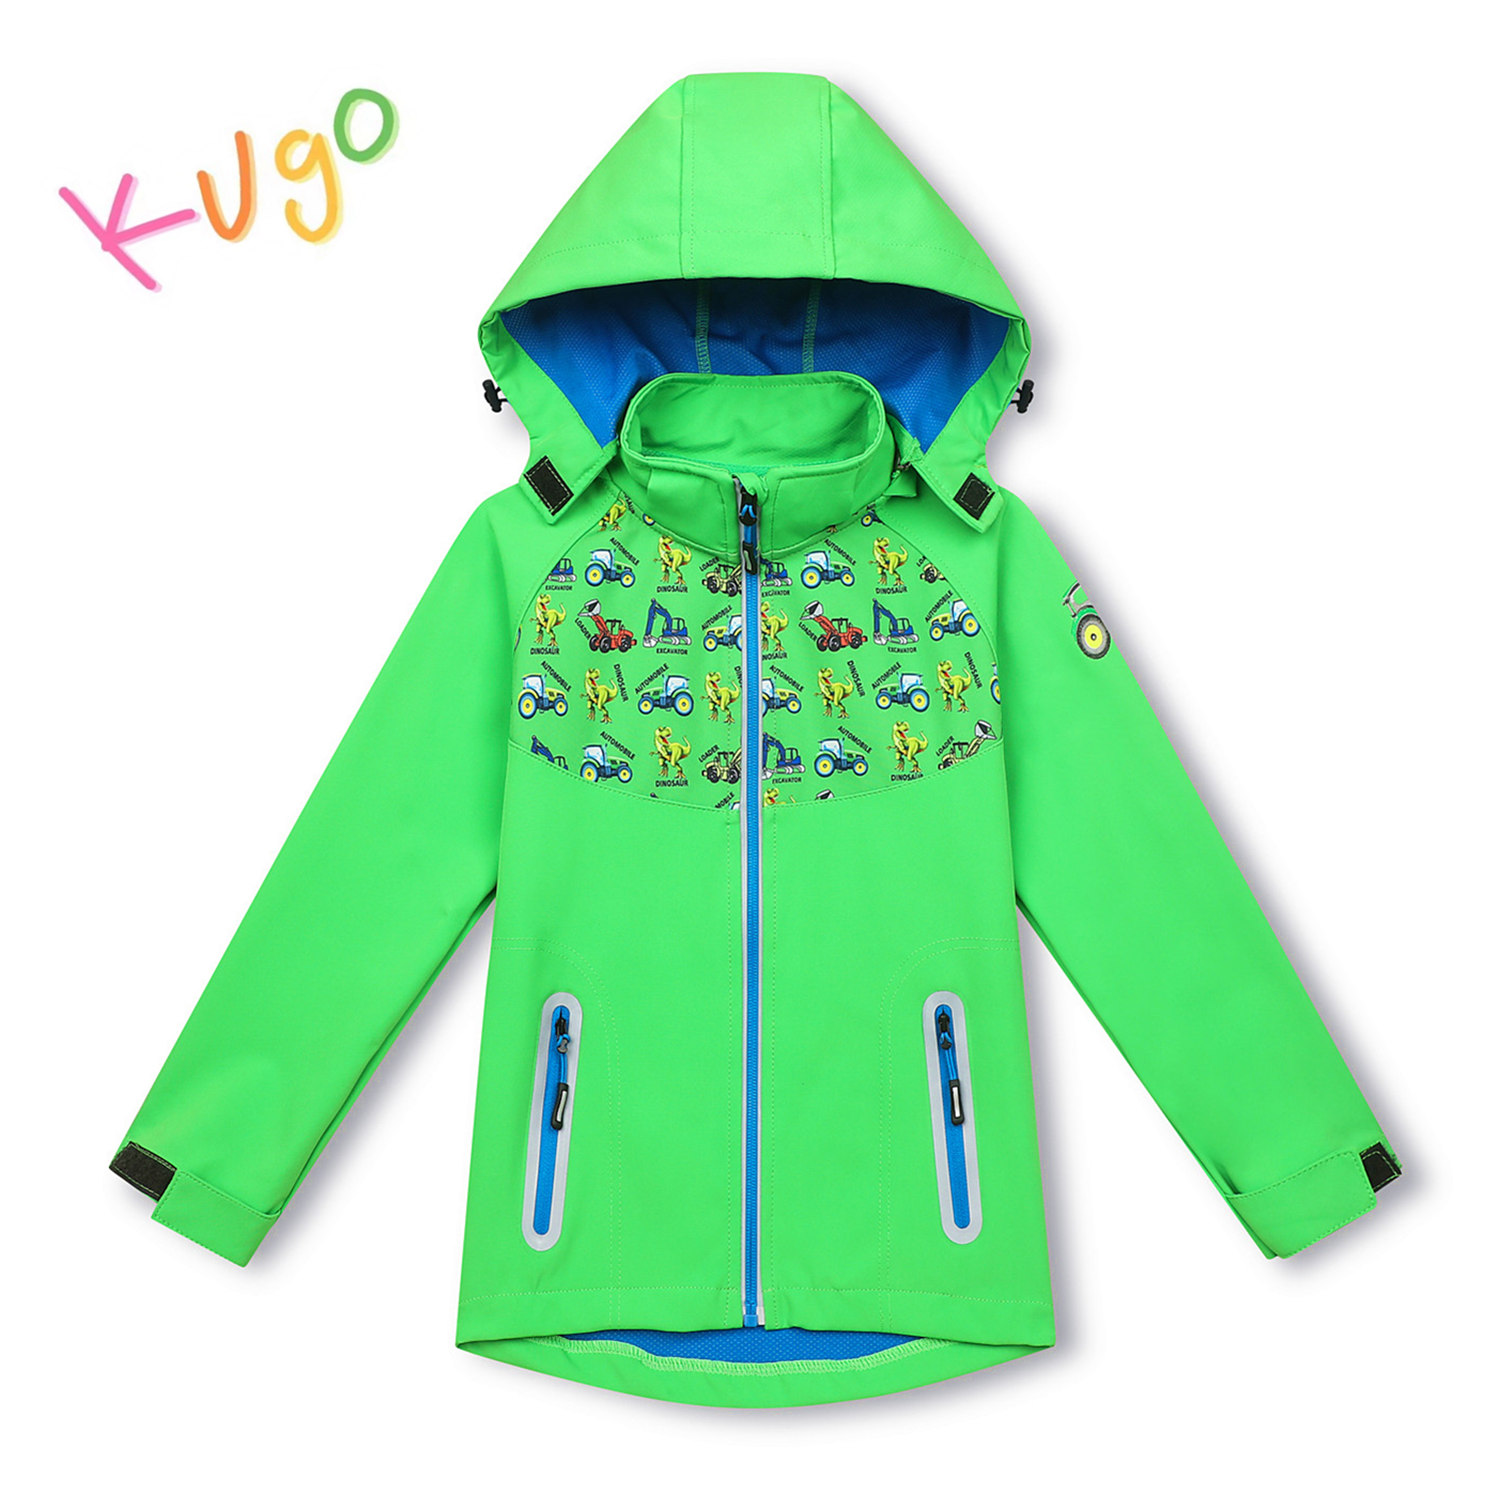 Chlapecká softshellová bunda - KUGO HK3121, zelená Barva: Zelená, Velikost: 104